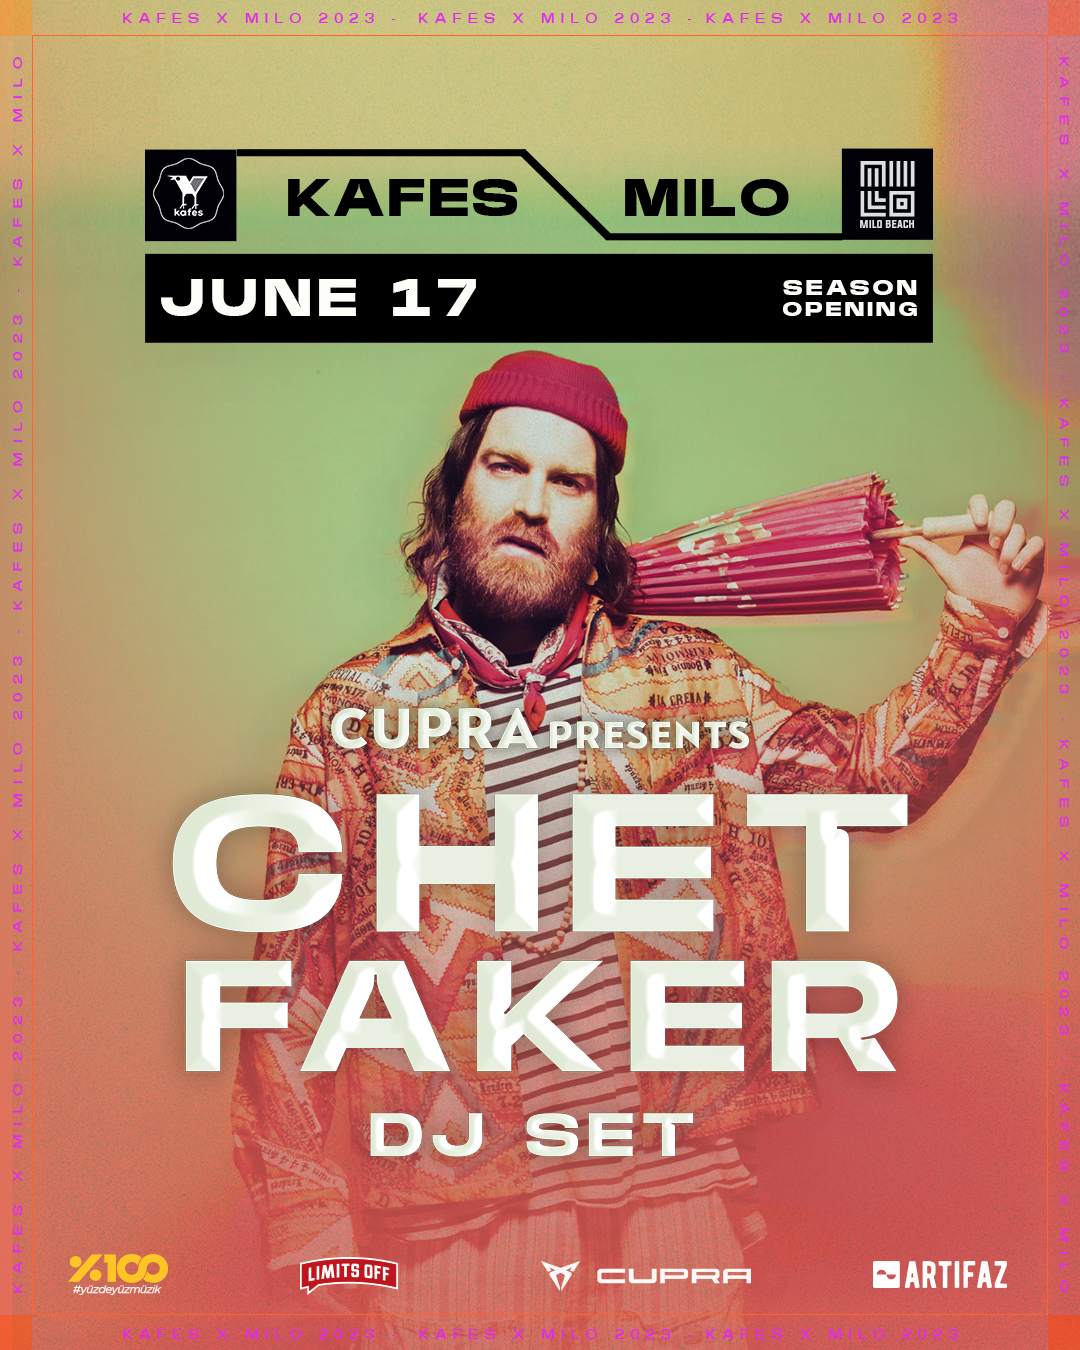 Cupra presents Chet Faker (DJ Set) - フライヤー表